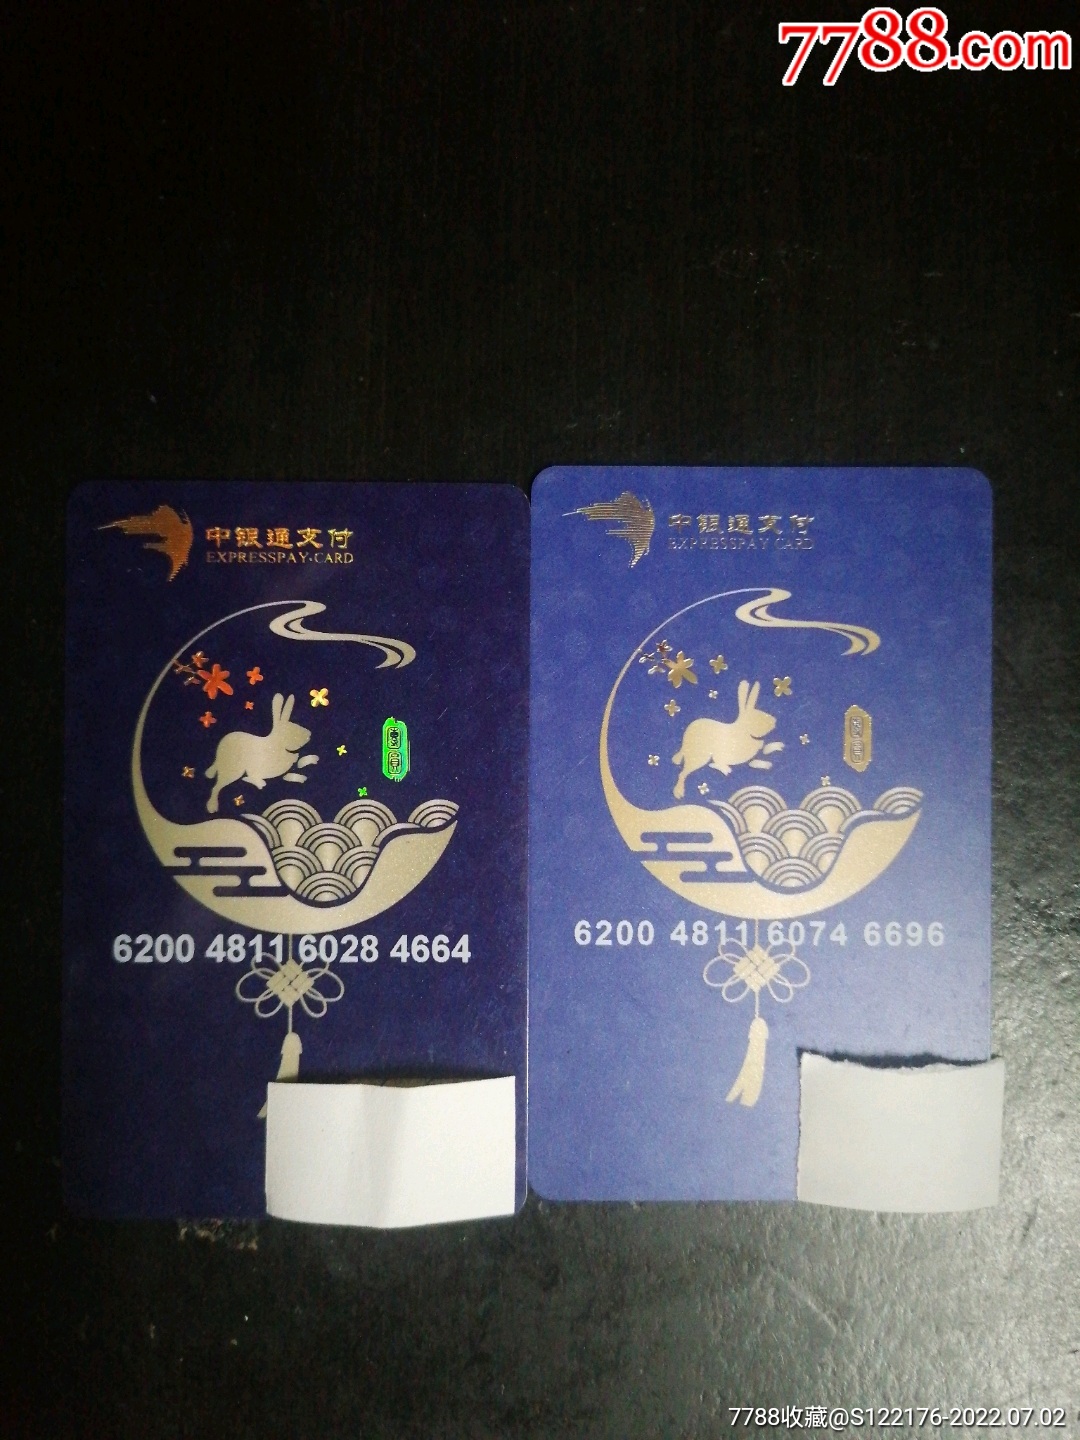 我的中信南航白 信用卡使用推荐-信用卡攻略-飞客网